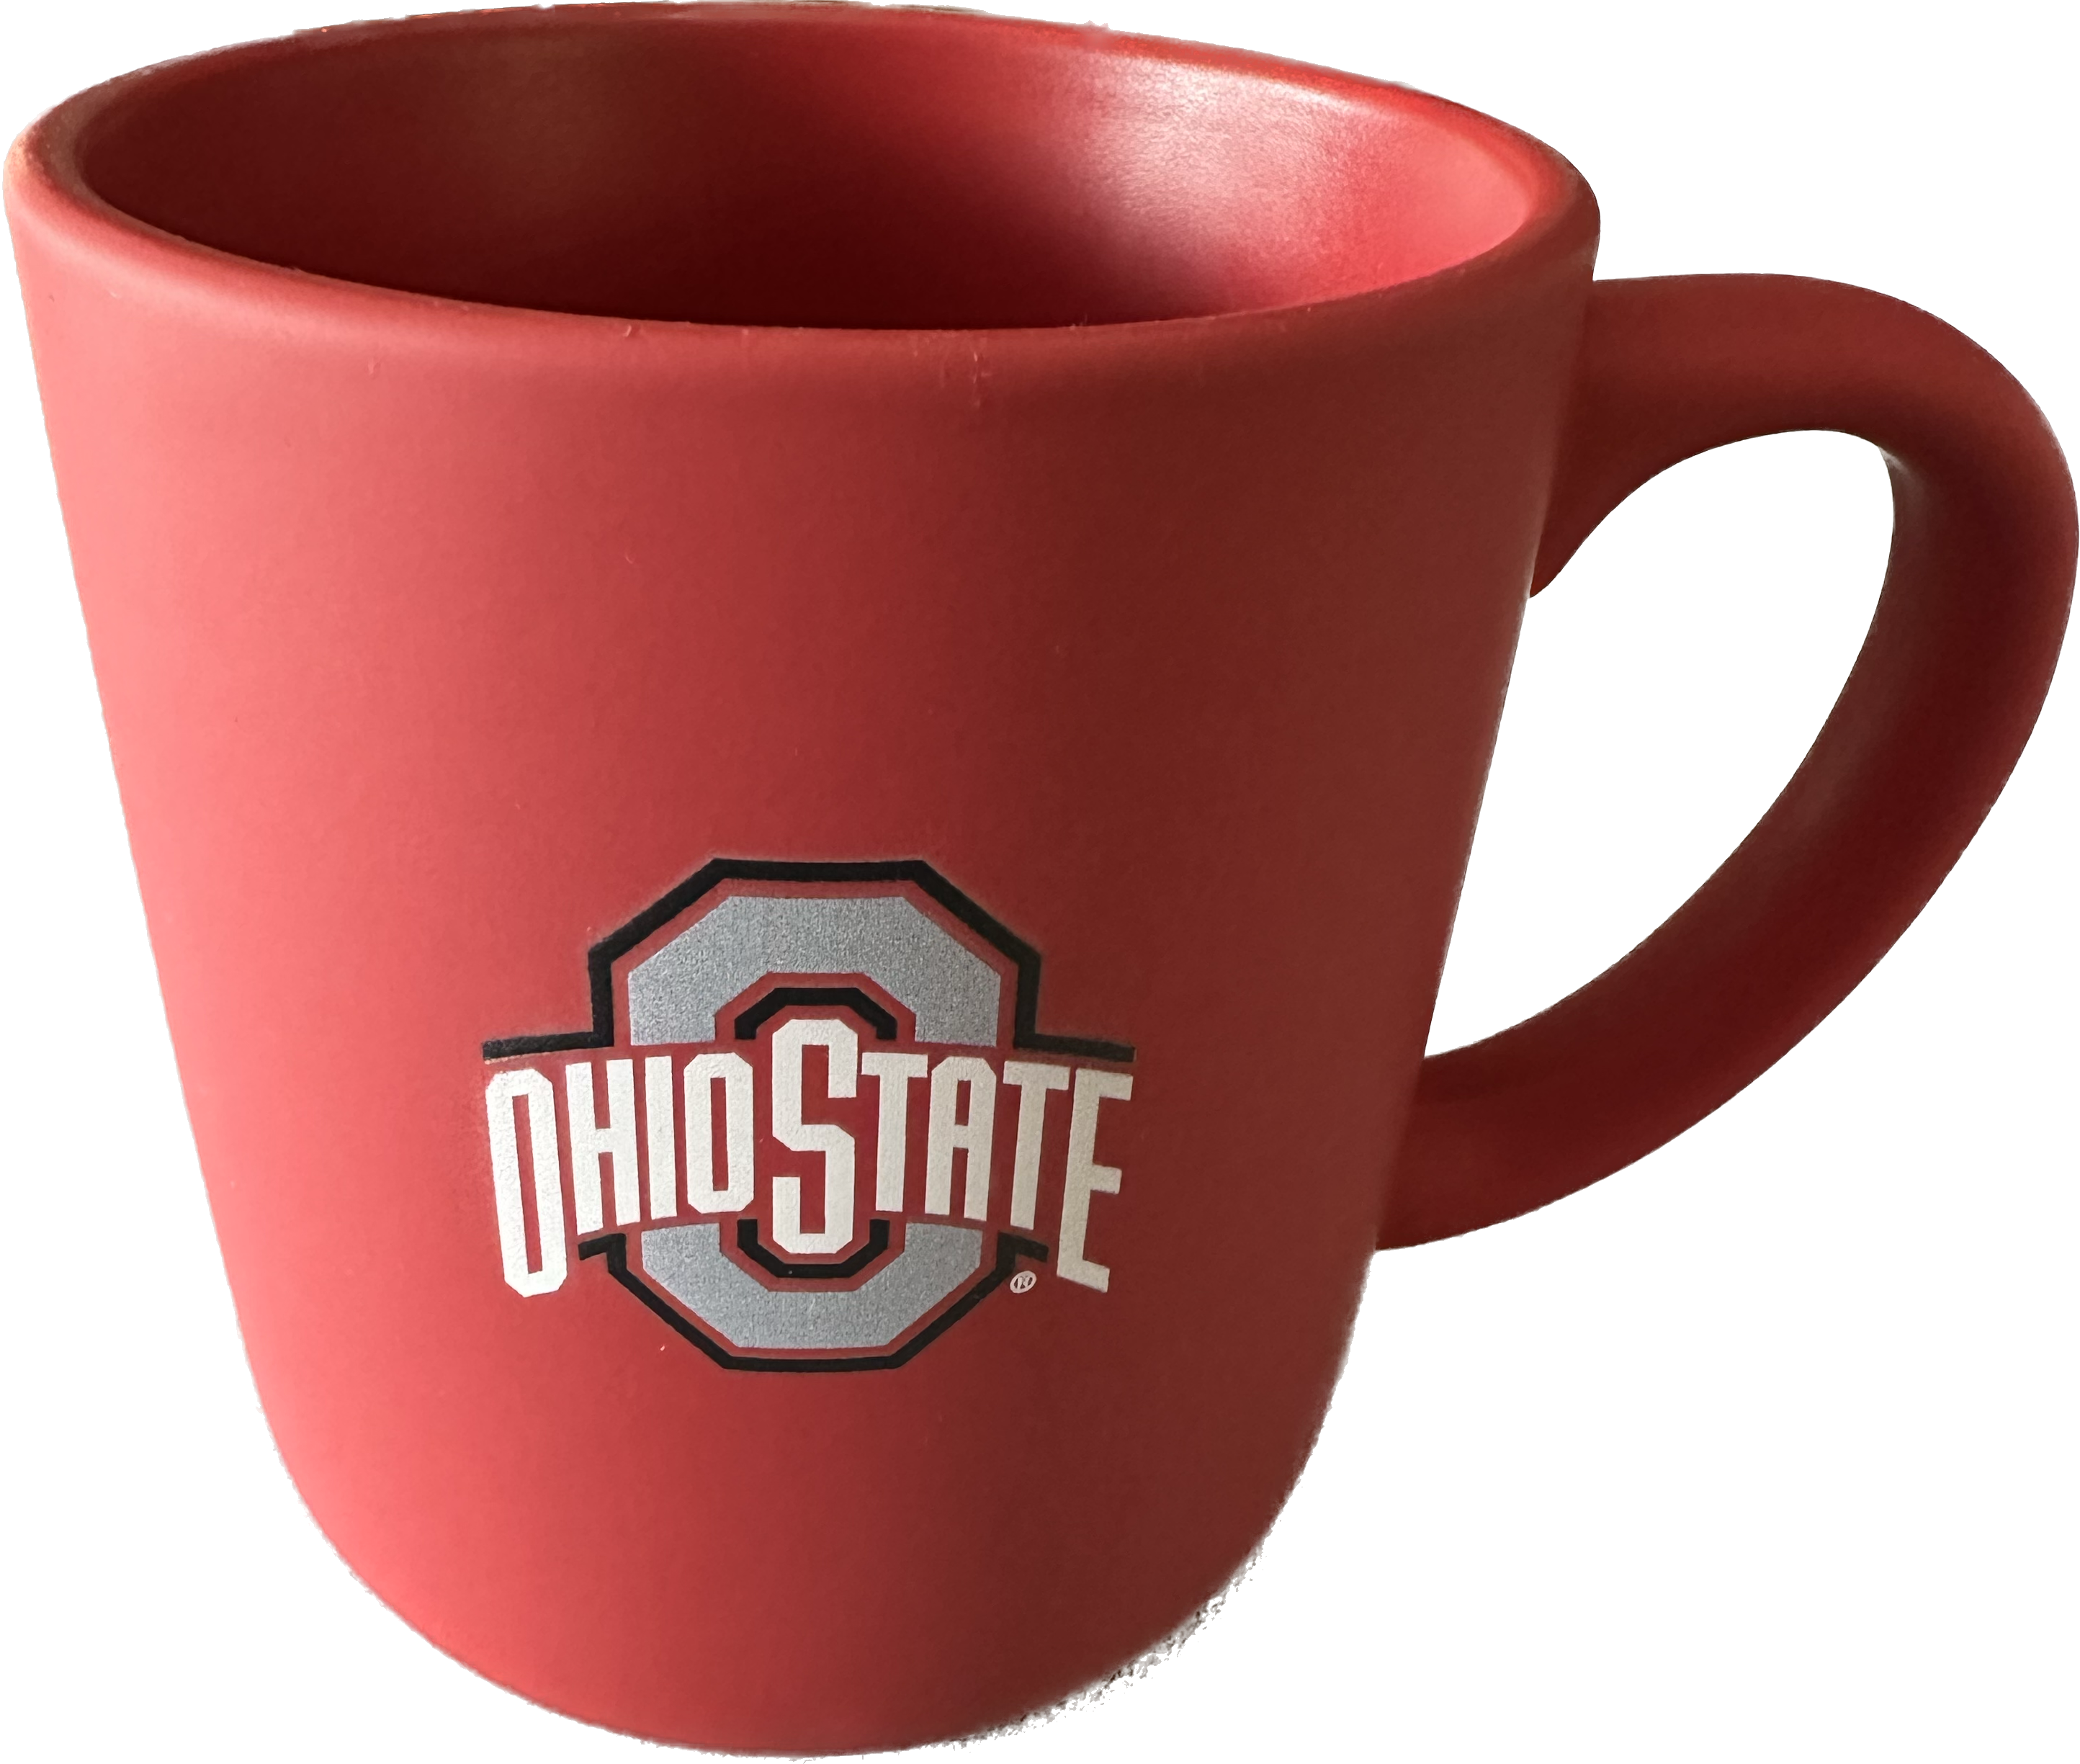 Ohio State Buckeye Soft Touch Ceramic Travel Mug - 16 oz